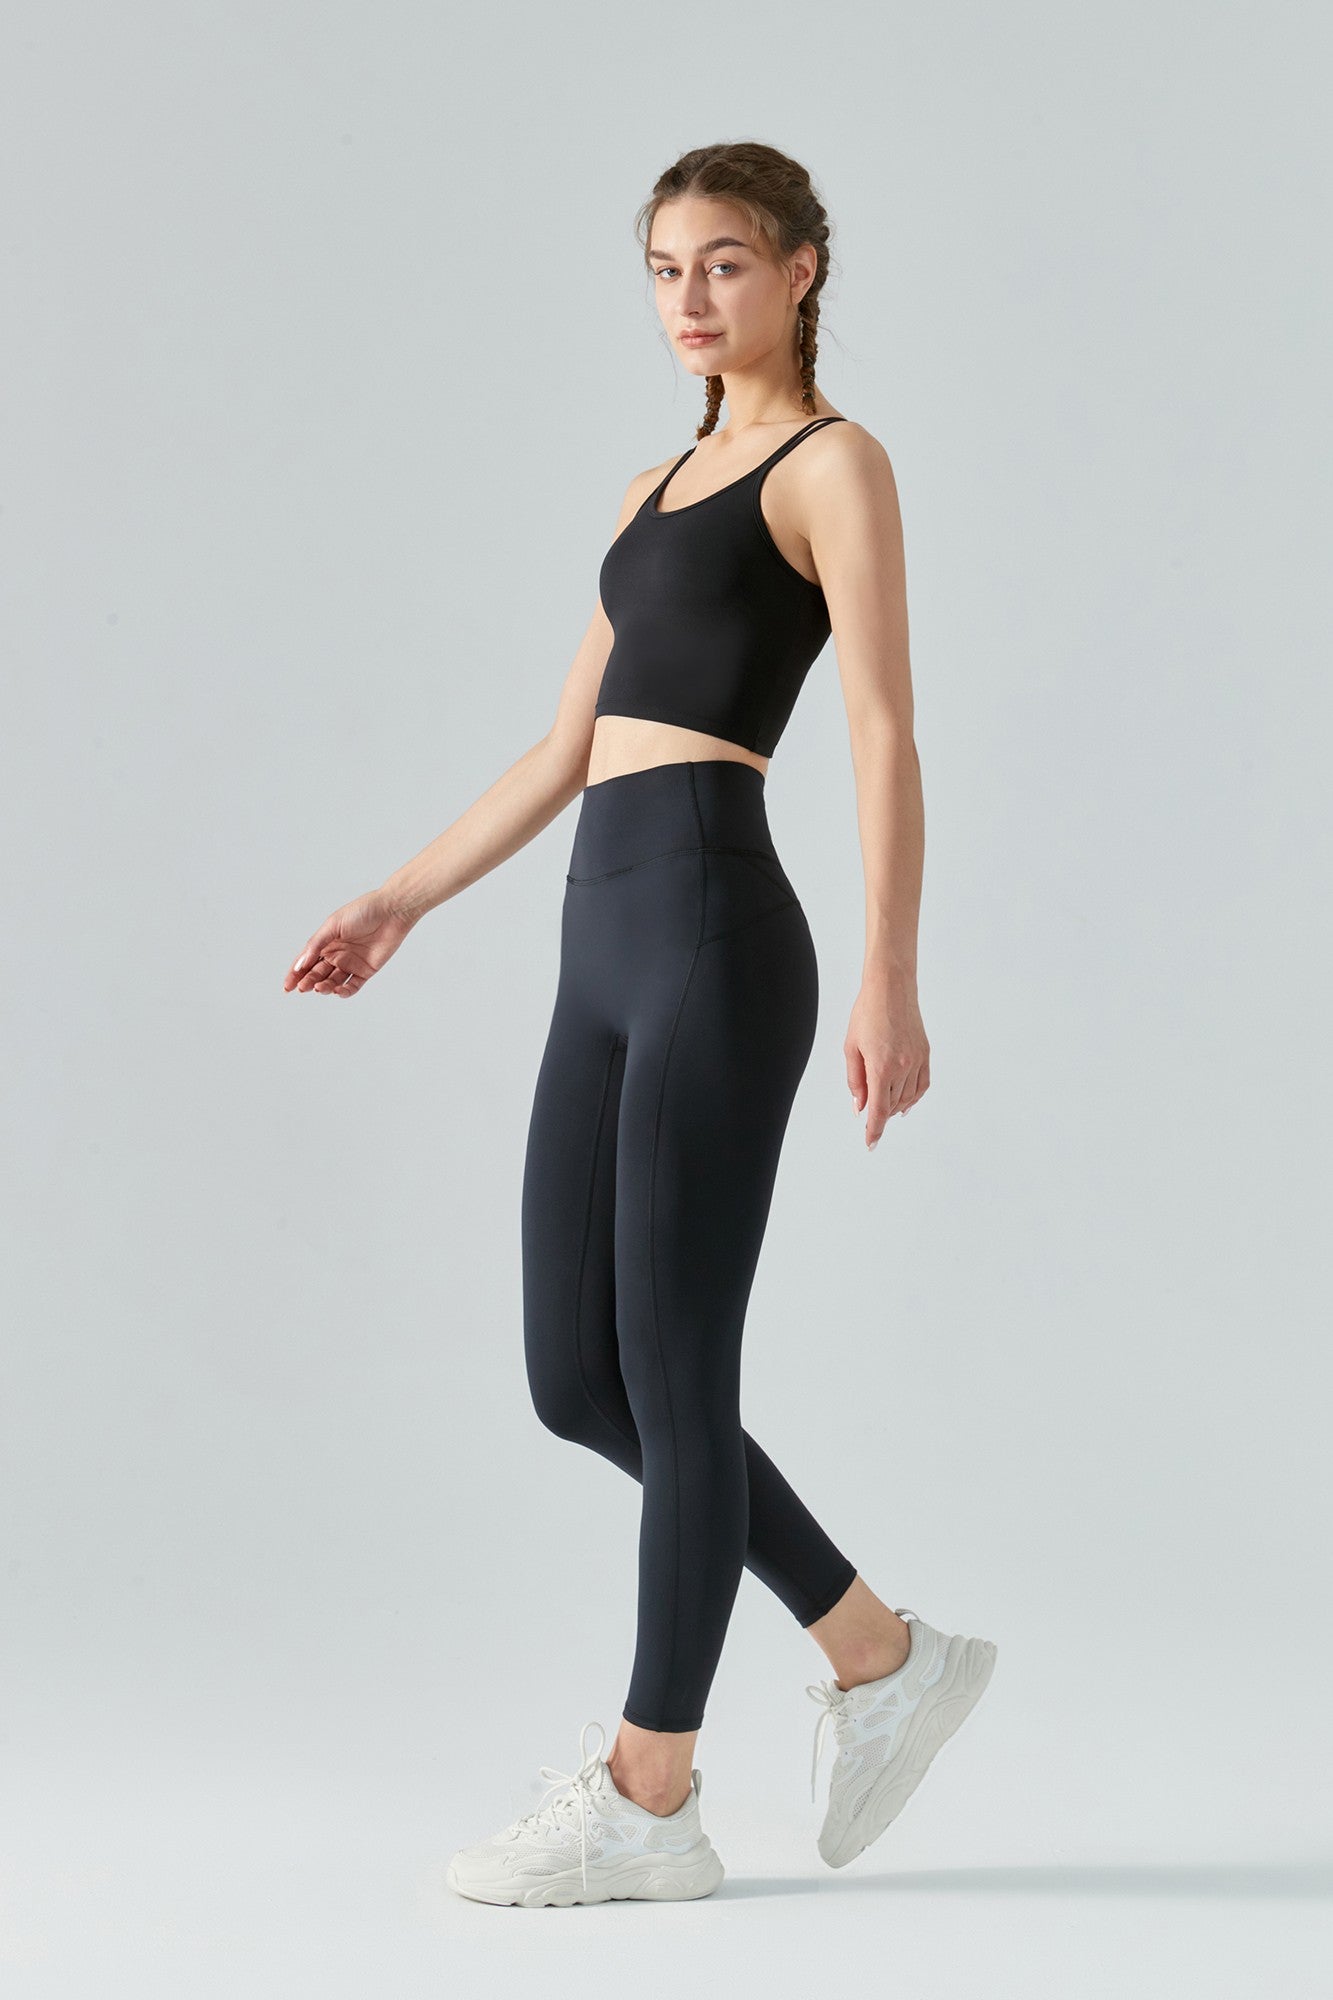 https://zioccie.com/cdn/shop/products/womens-high-waist-seamless-fleece-lined-thermal-workout-leggings_16.jpg?v=1665941517